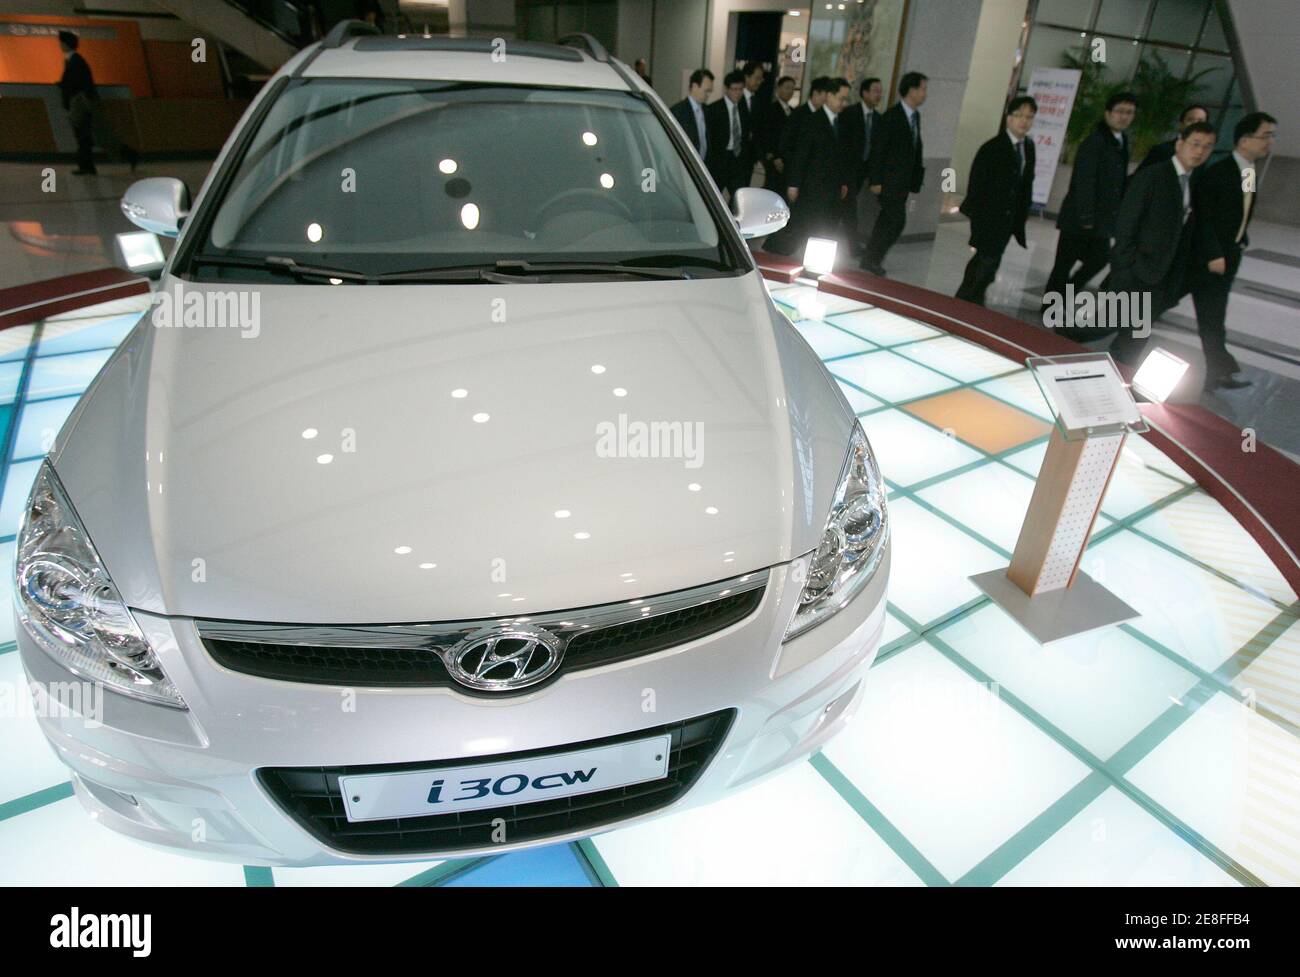 Mitarbeiter von Hyundai Motor laufen an seinem Auto I30 CW vorbei, das in einer Lobby am Firmenhauptsitz in Seoul am 2. Januar 2009 ausgestellt ist. Die Daten vom Freitag zeigten, dass der Gesamtumsatz der südkoreanischen Automobilhersteller im Dezember gegenüber dem Vorjahr gesunken war und dass die Nachfrage nach Autos aufgrund einer globalen Rezession und der Finanzkrise weiter nachließ. REUTERS/Jo Yong-Hak (SÜDKOREA) Stockfoto